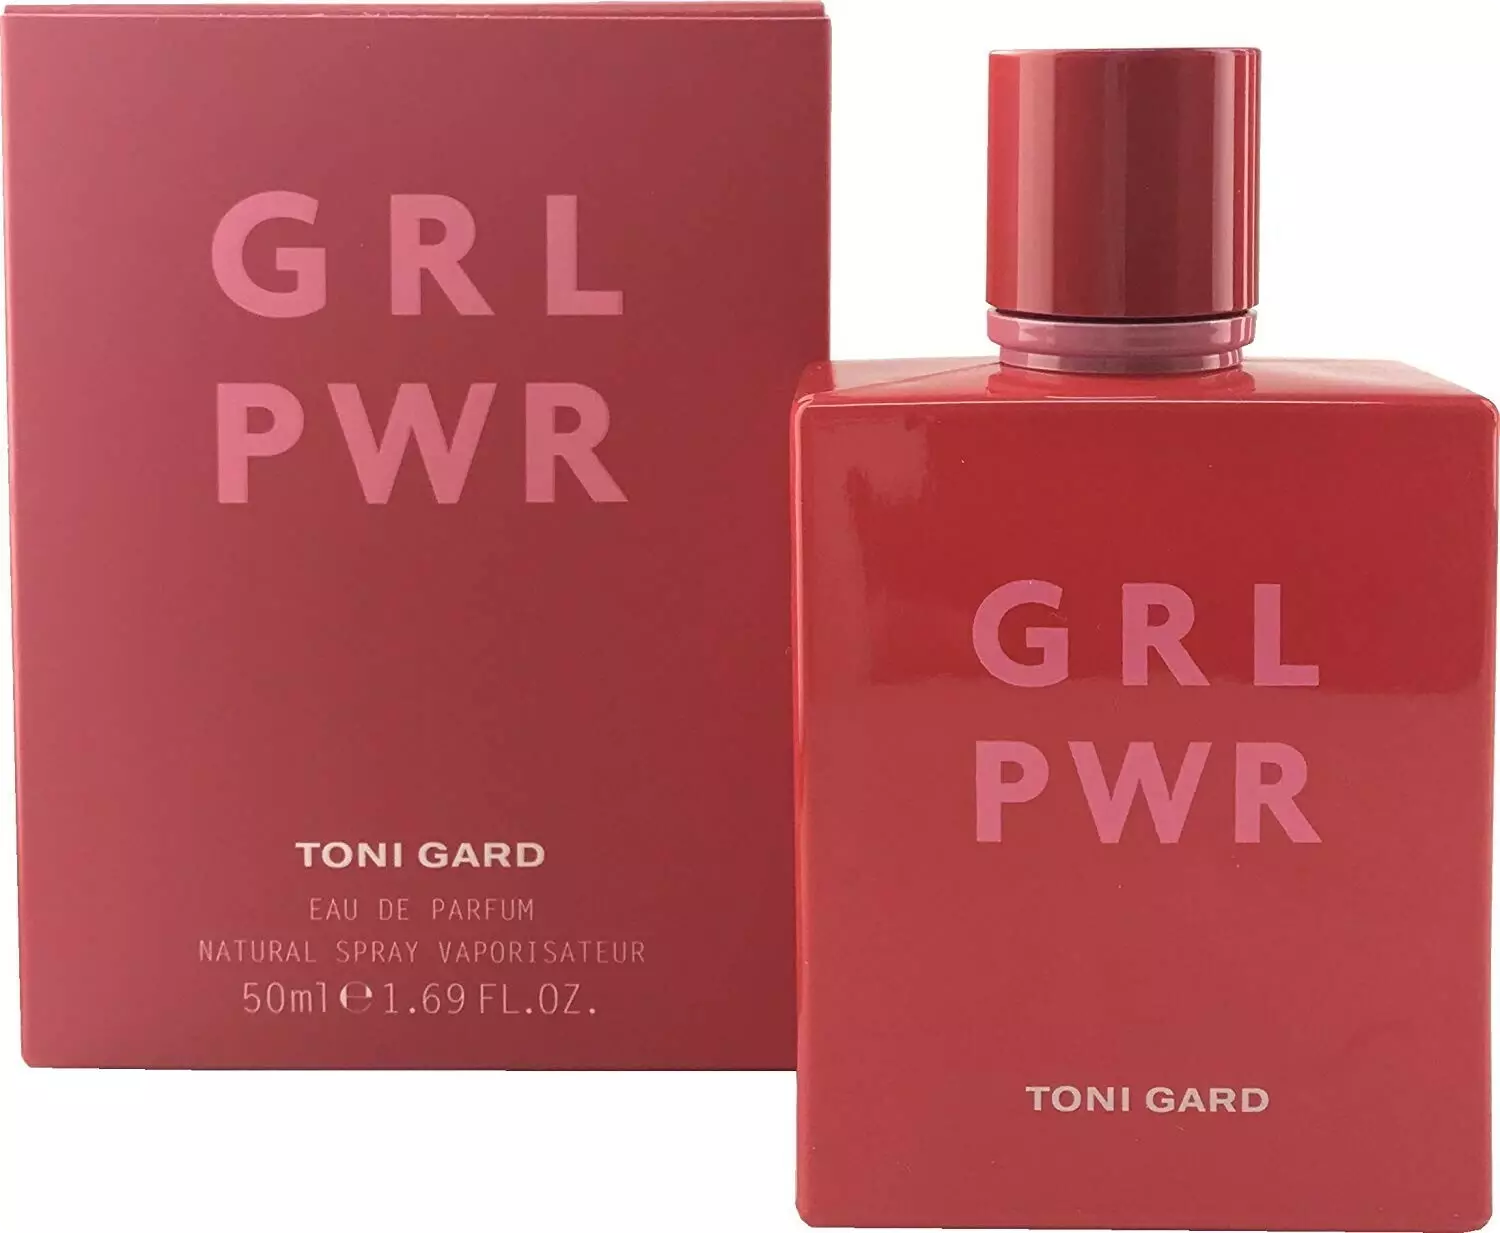 Купить духи Toni Gard Пи интернет-магазине парфюм туалетная аромата Эр Джи Эр Гард Pwr цена — и — В вода Тони в женская и описание Grl Эл